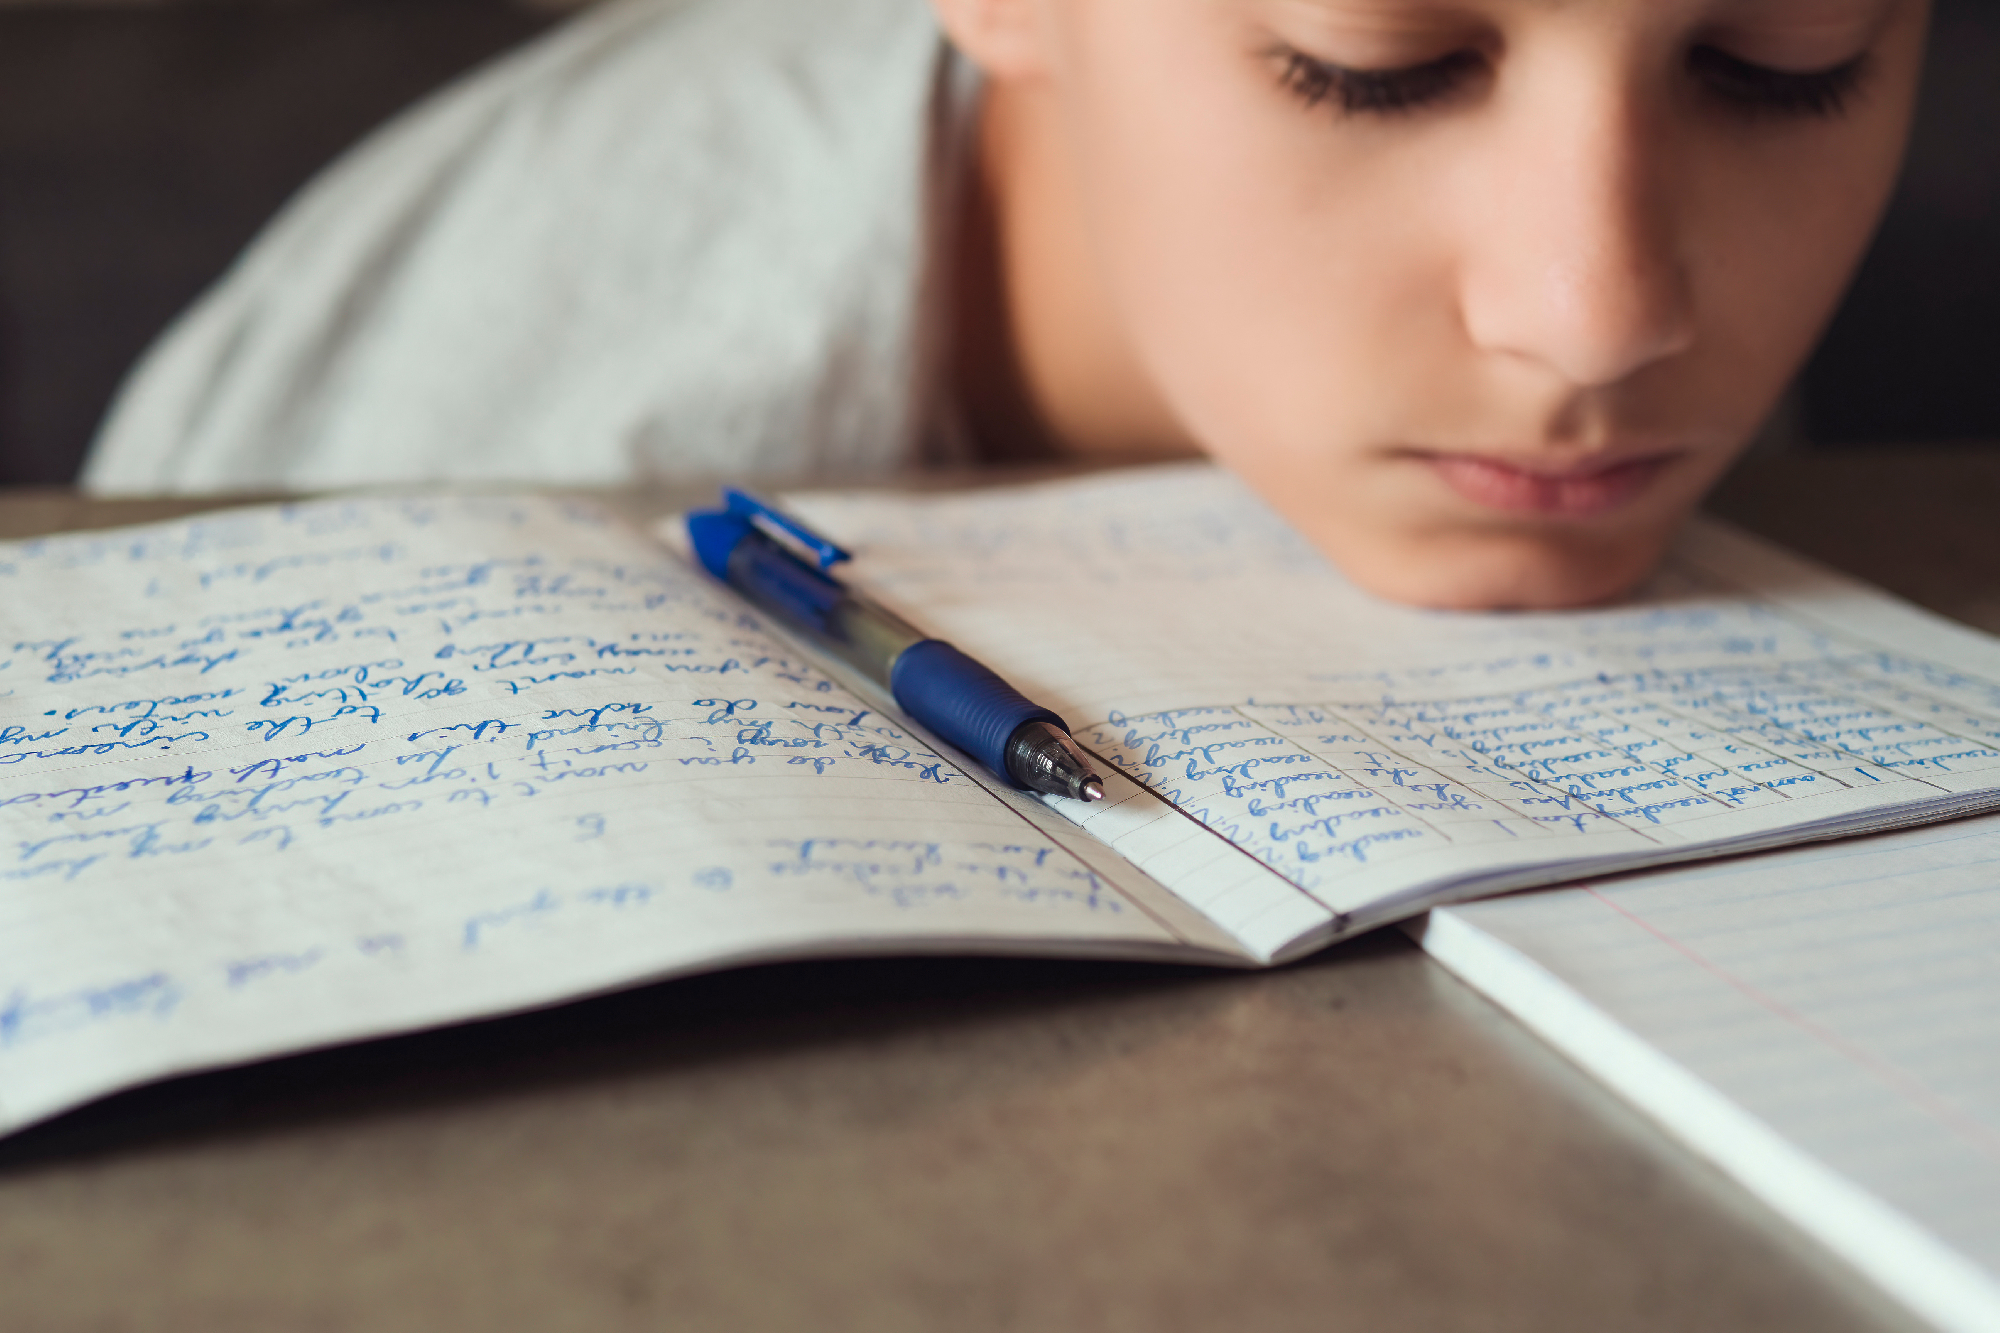 Ogólnopolski Test Dysleksji, materiały wysłane przez organizatora, dziecko odrabiajace zadanie domowe